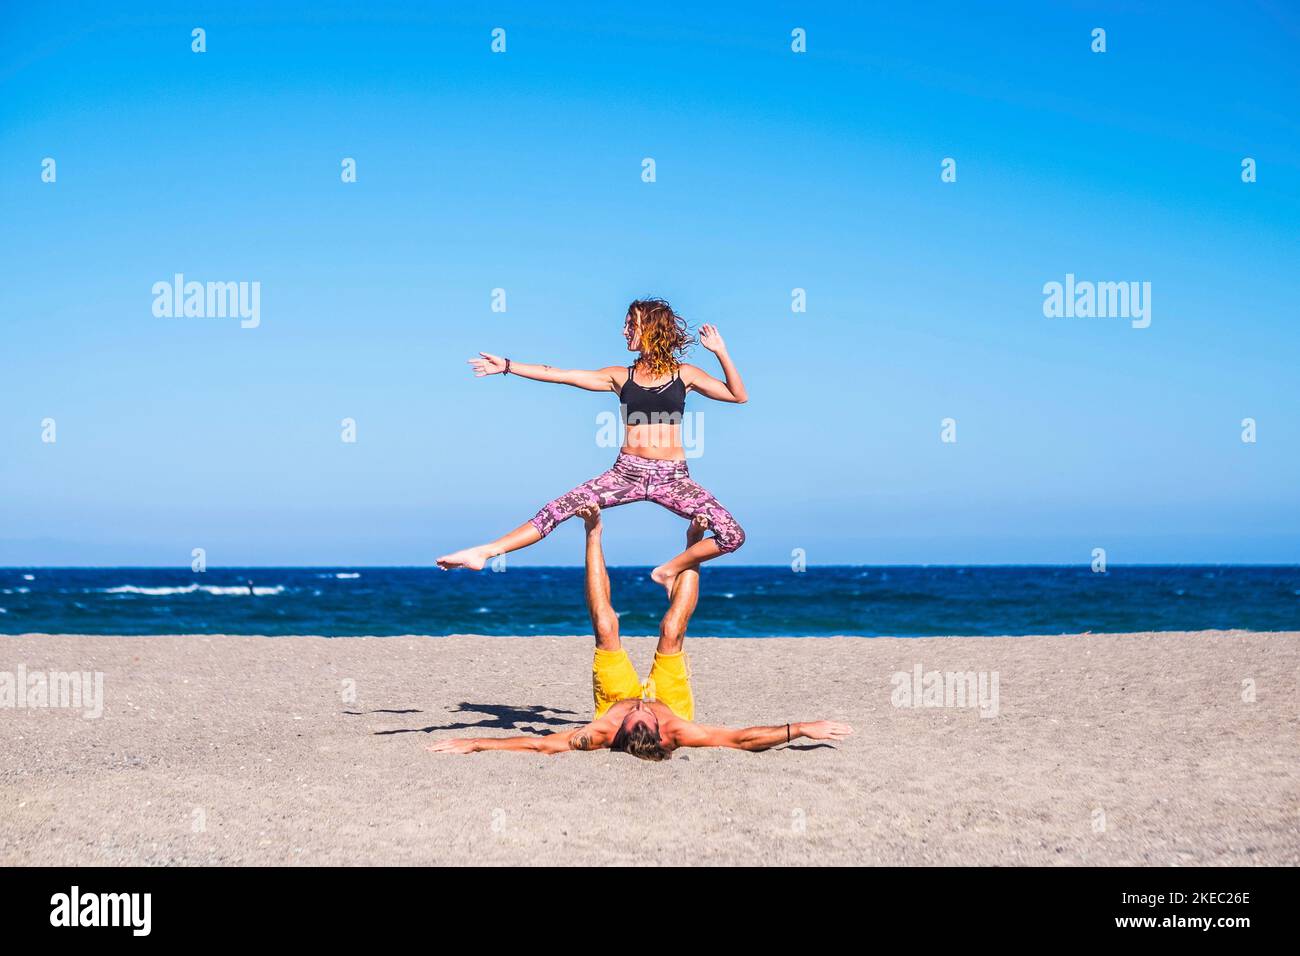 couple d'adultes faisant de l'exercice à la plage togetehr sur le sable - deux personnes faisant le yoga ou l'acro yoga avec la mer à l'arrière-plan - homme holtinng son petite amie avec ses jambes Banque D'Images